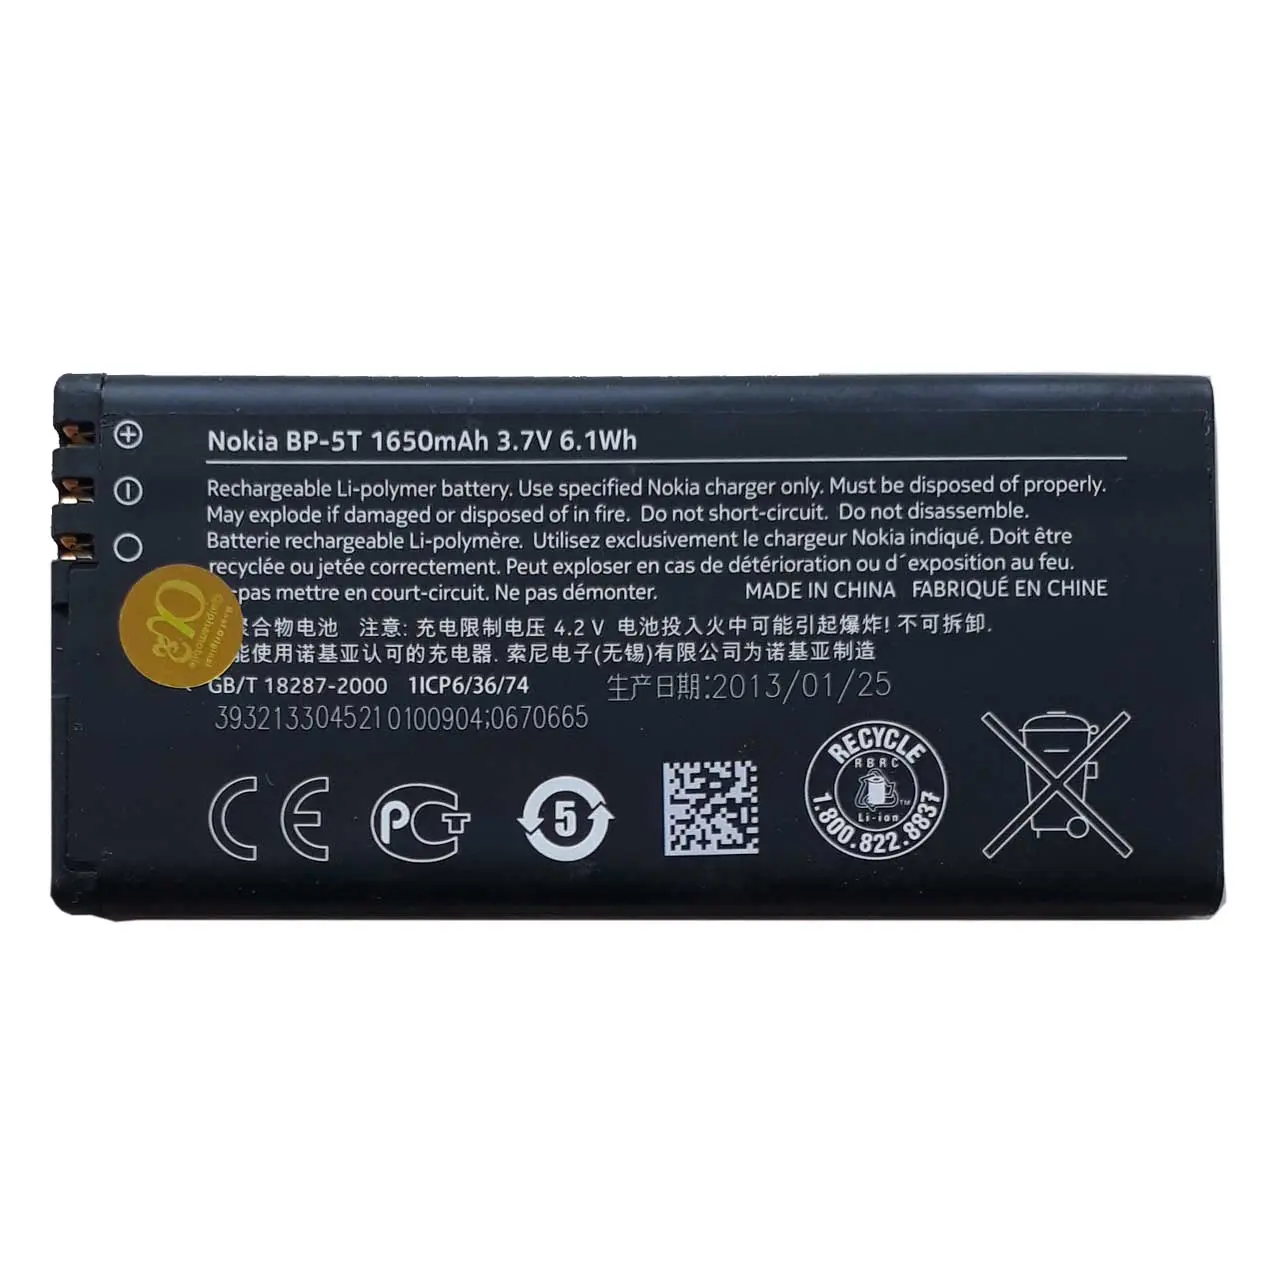 باتری موبایل مدل BP-5T با ظرفیت 1650 میلی آمپر مناسب گوشی نوکیا Lumia 820